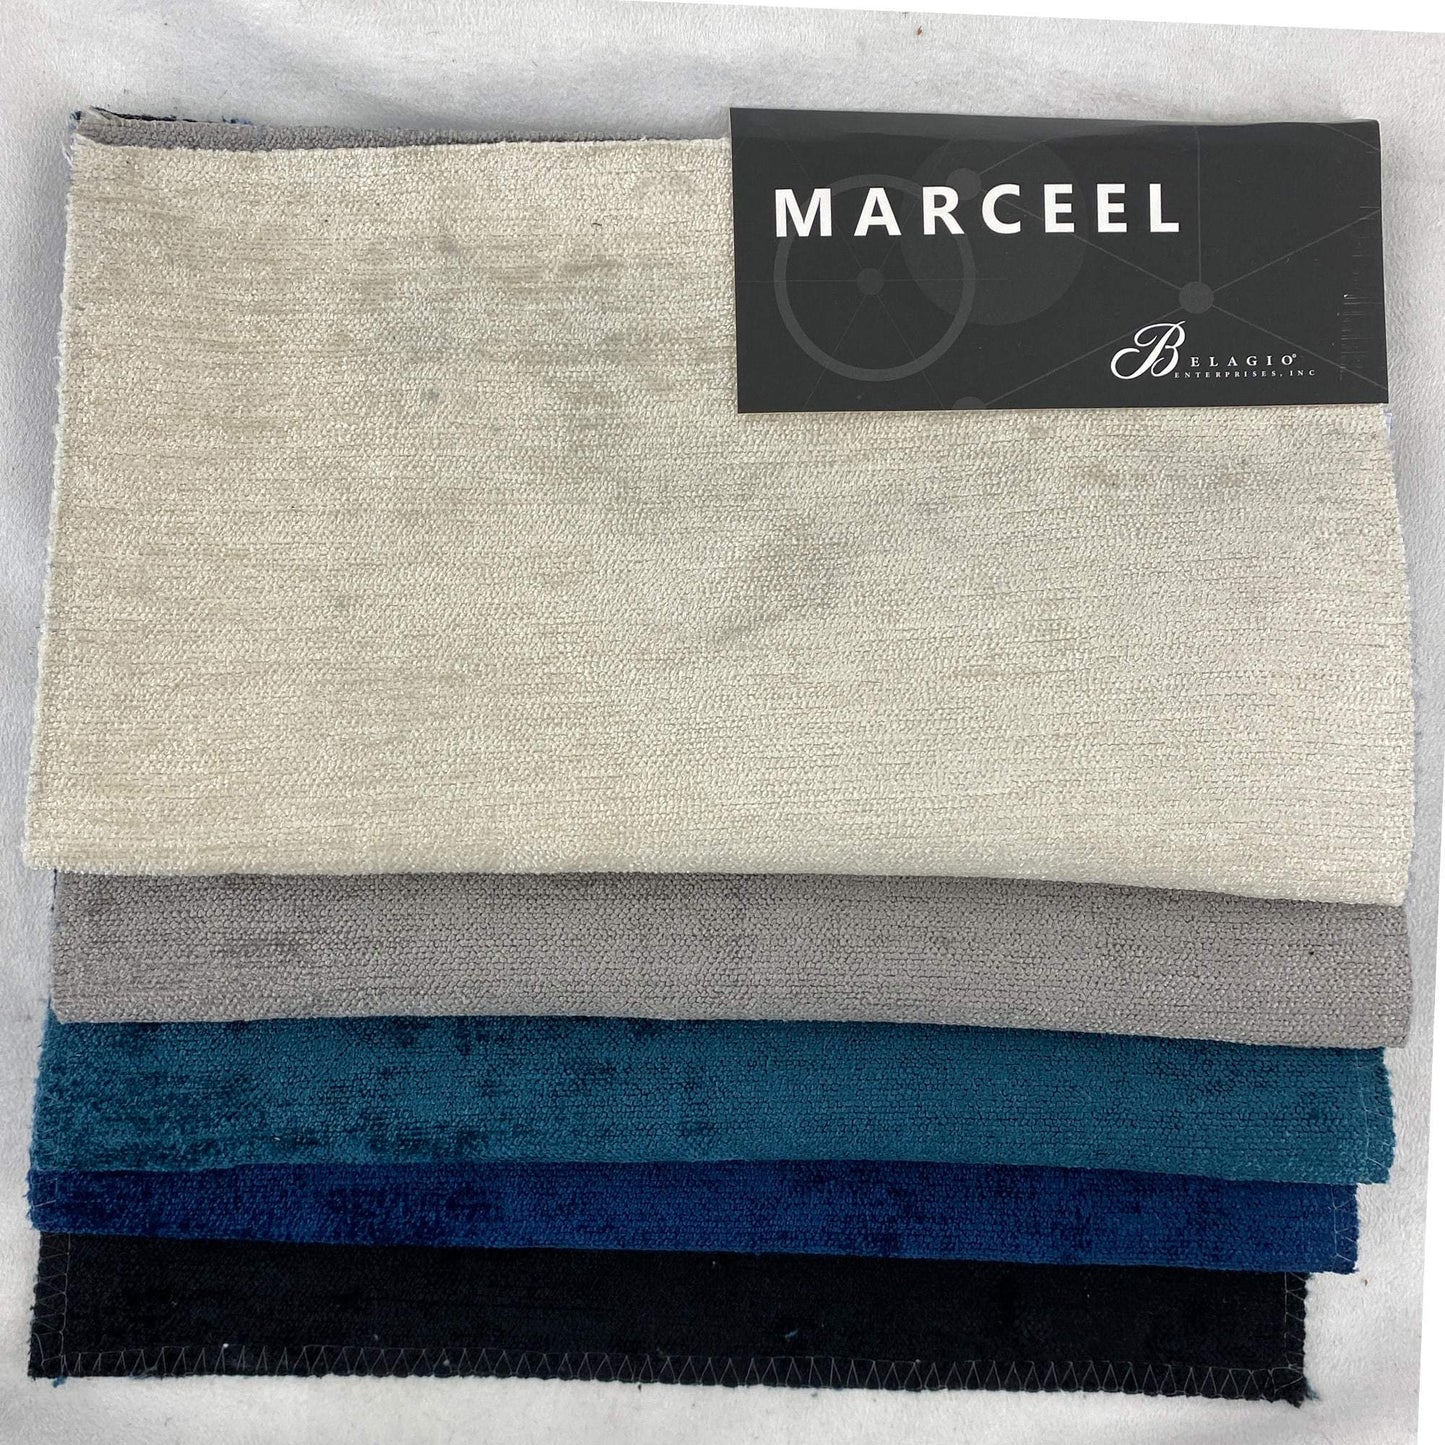 "Marceel" Fabric (Silver Color)